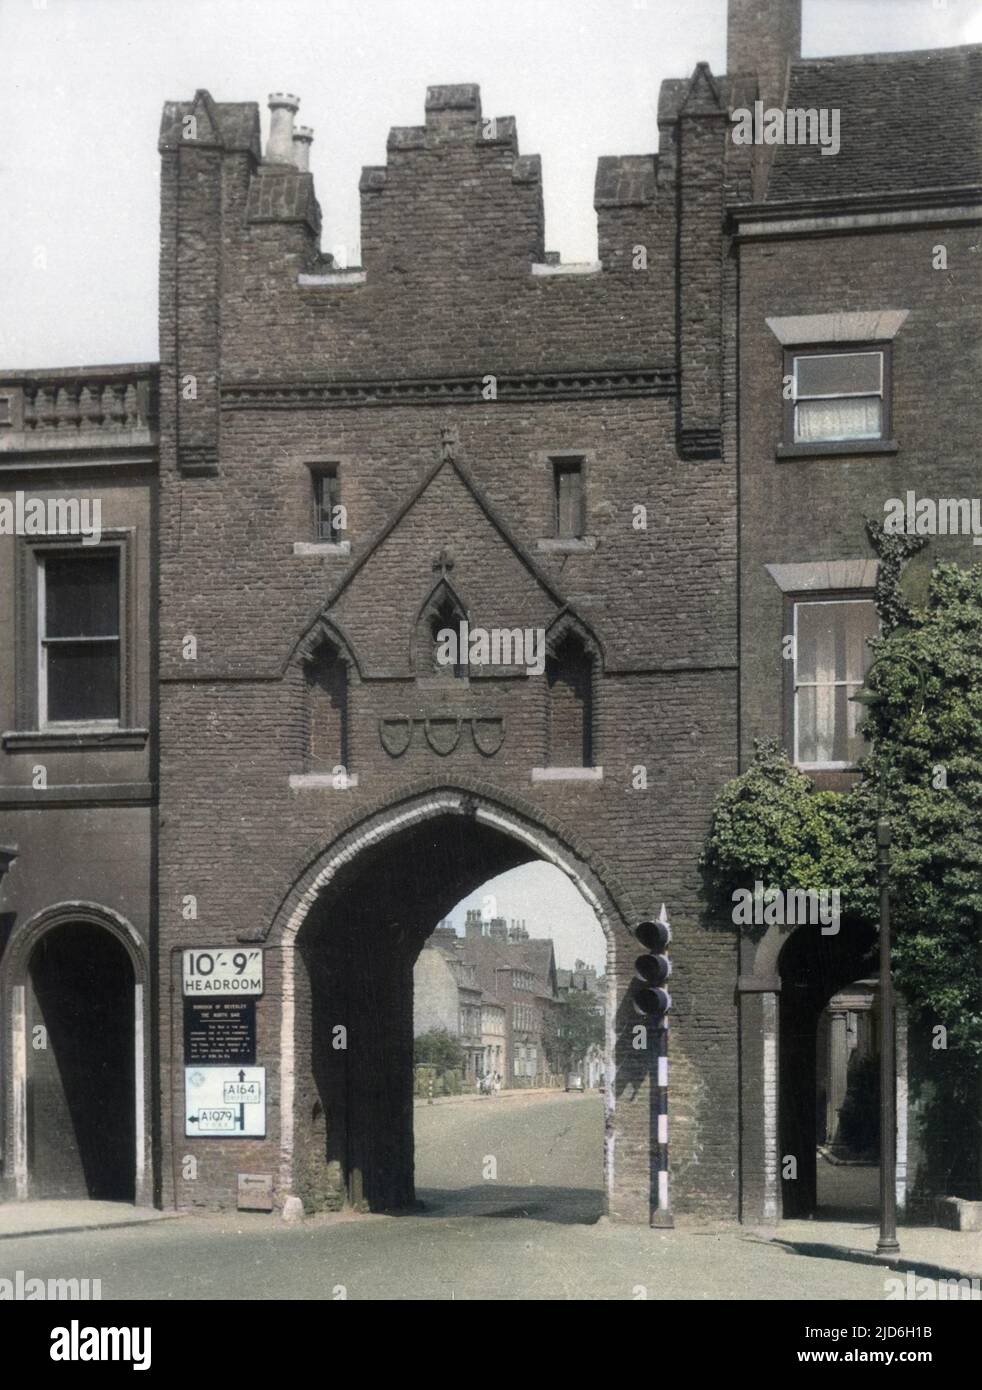 North Bar, Beverley, Yorkshire, England, das einzige erhaltene mittelalterliche Tor in dieser schönen Altstadt. Kolorierte Version von : 10187715 Datum: Mittelalter Stockfoto